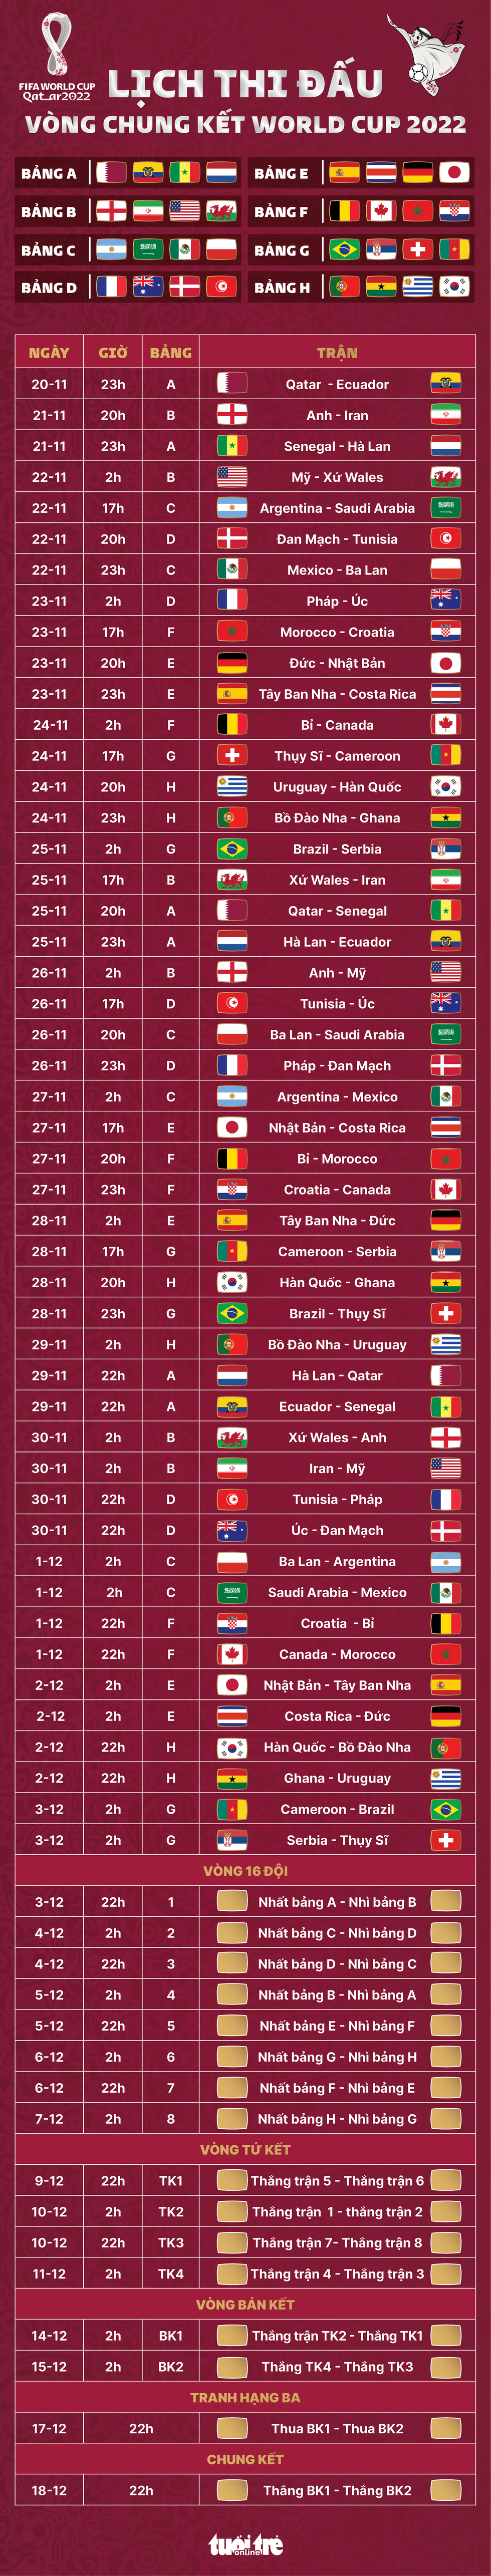 Lịch thi đấu toàn bộ 64 trận đấu tại World Cup 2022